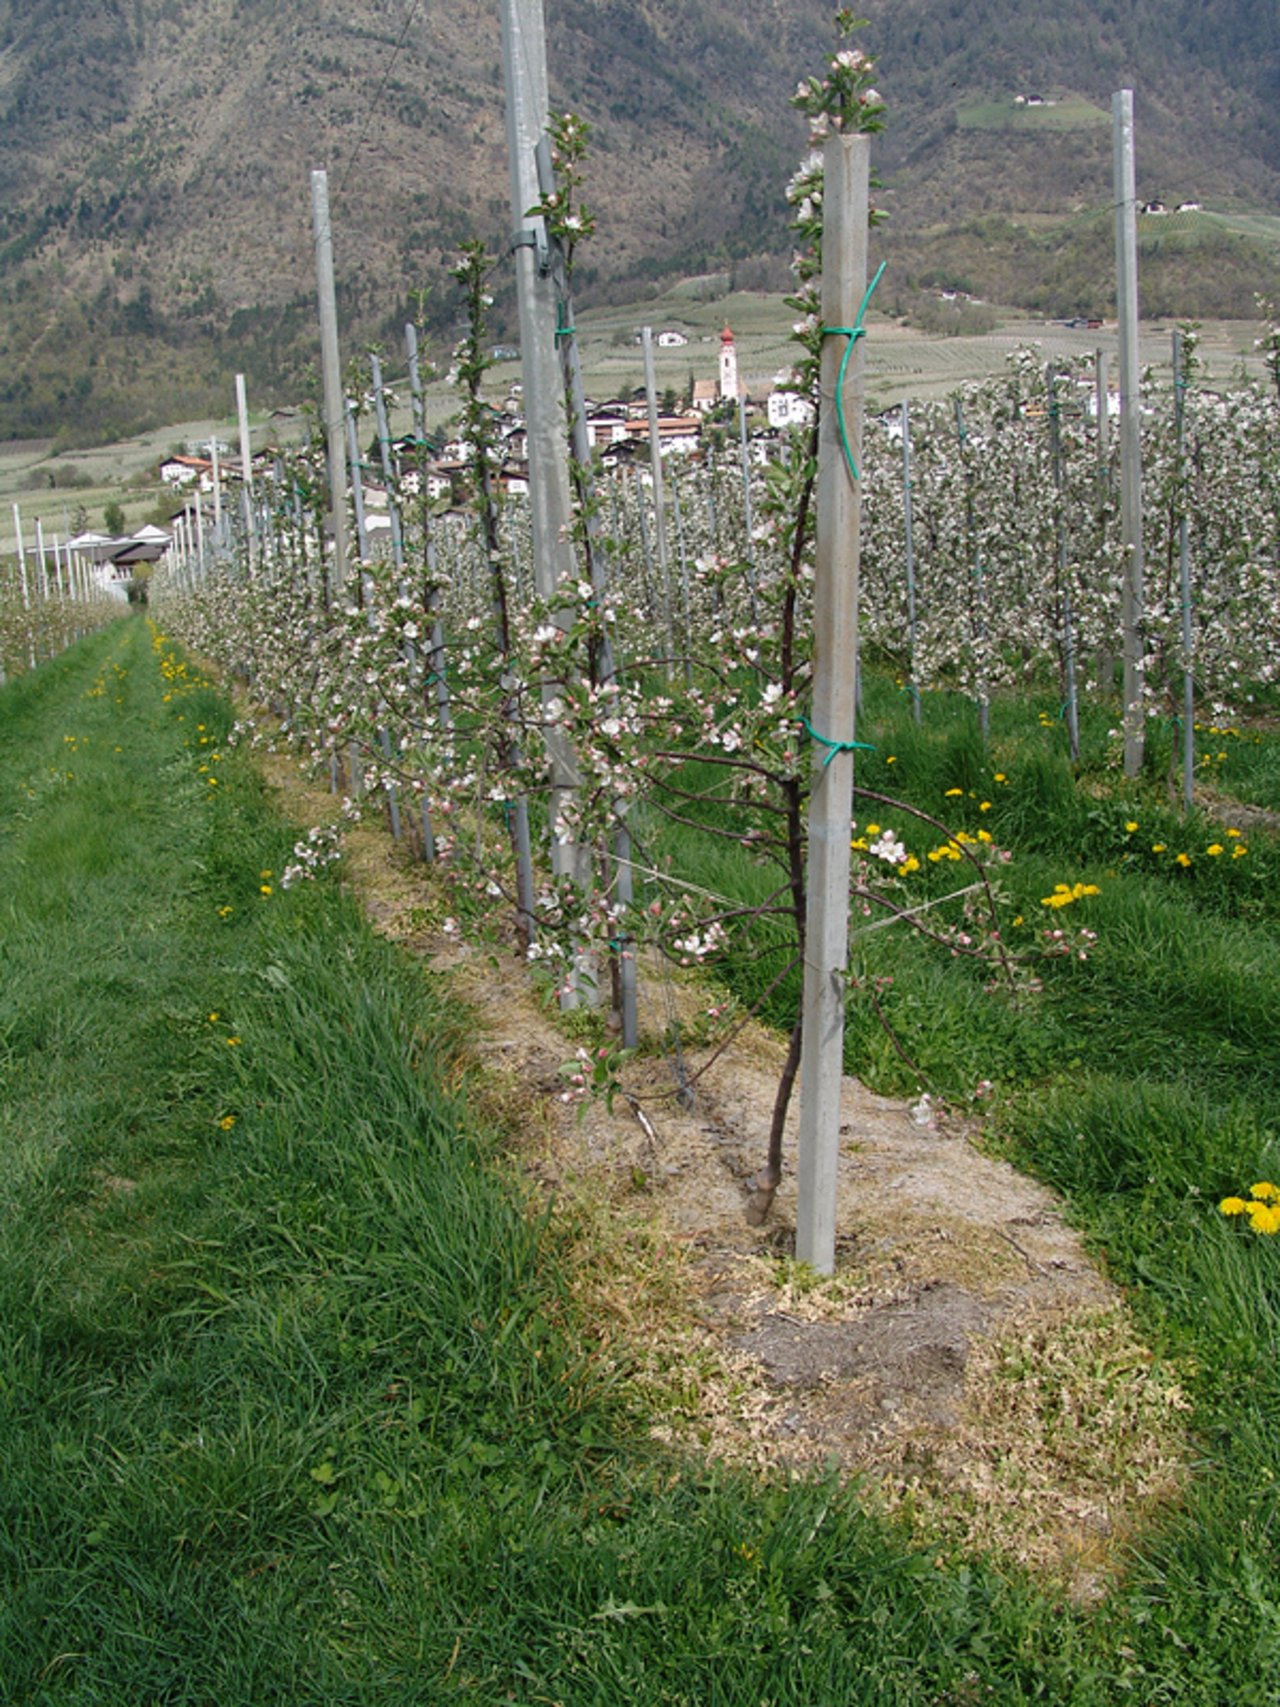 Glyphosateinsatz zum Freihalten der Baumscheibe auf einer Apfelplantage. (Bild Mnolf)